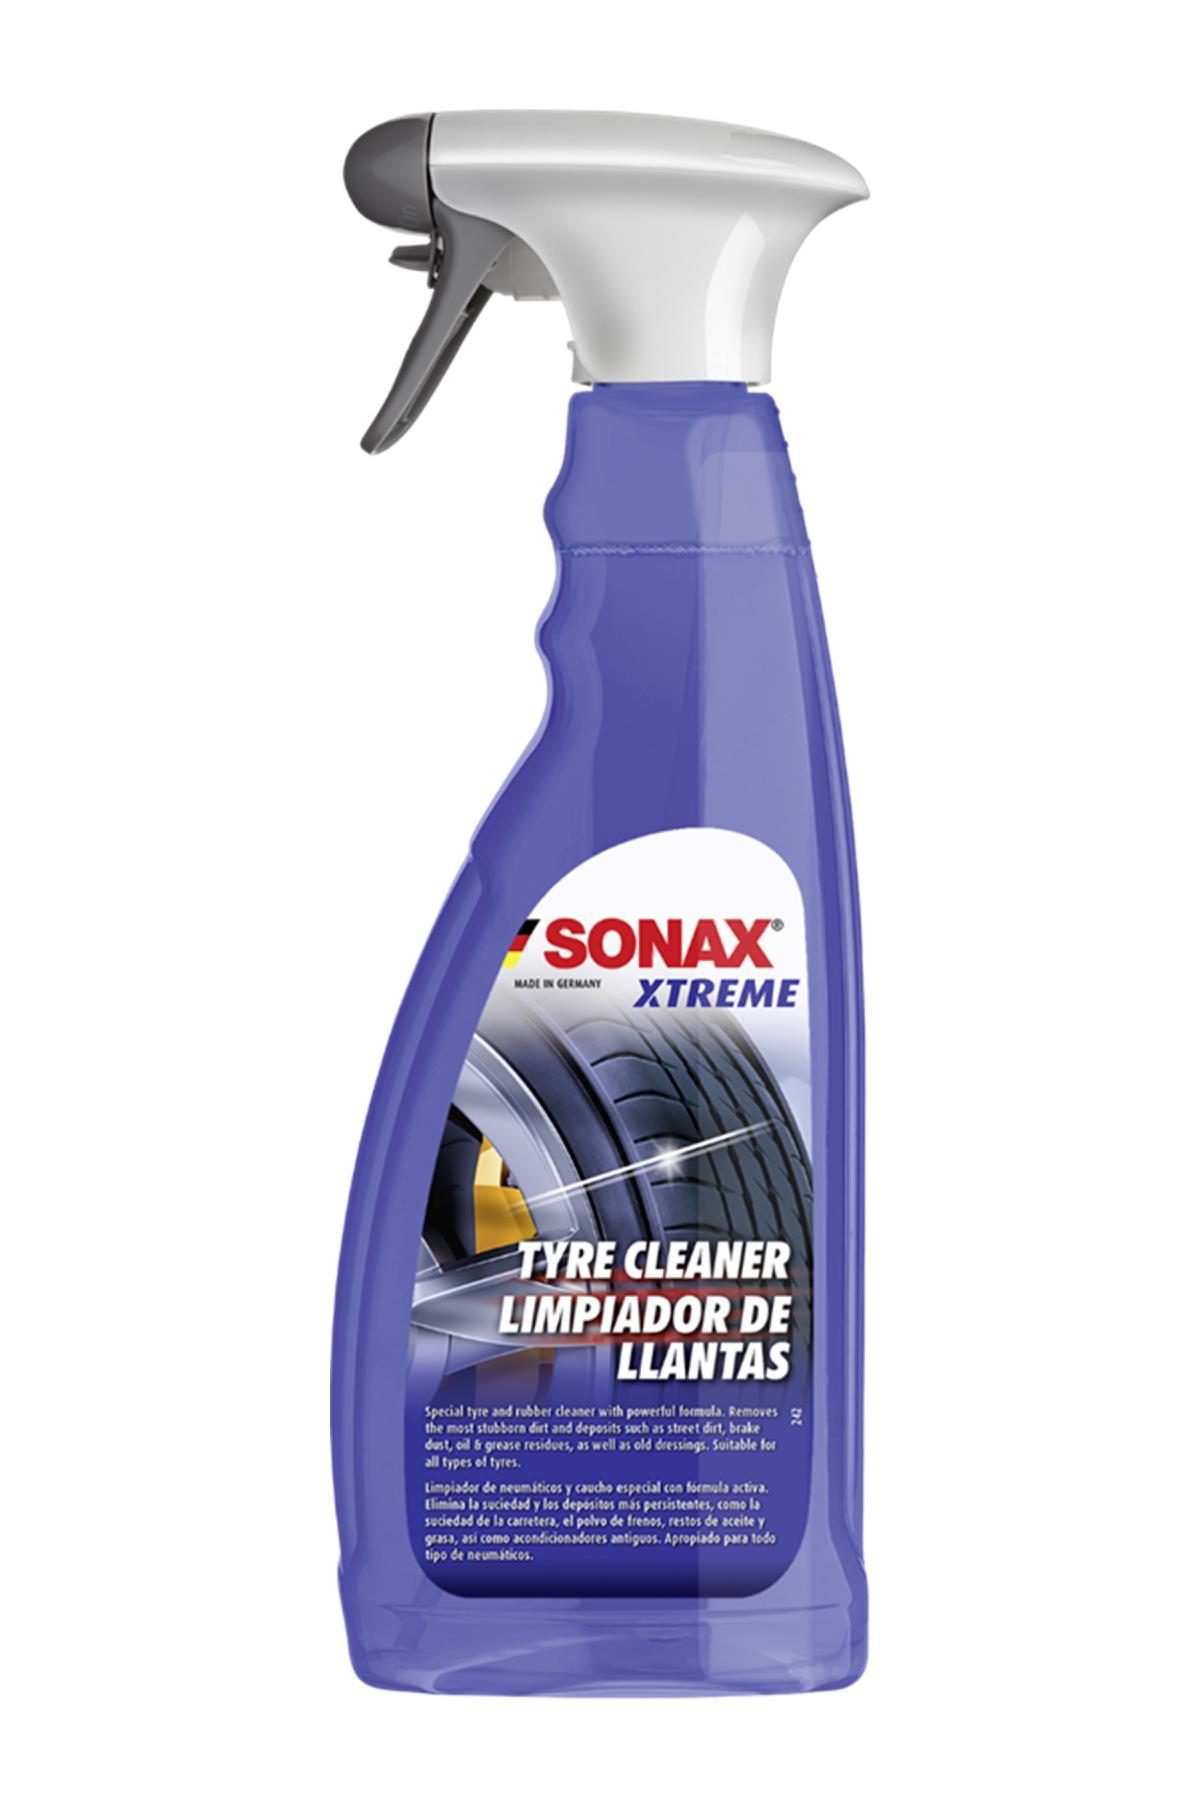 Sonax Xtreme Lastik Temizleyici 750 ml: Güçlü Temizlik, Parlıyor Lastikler!